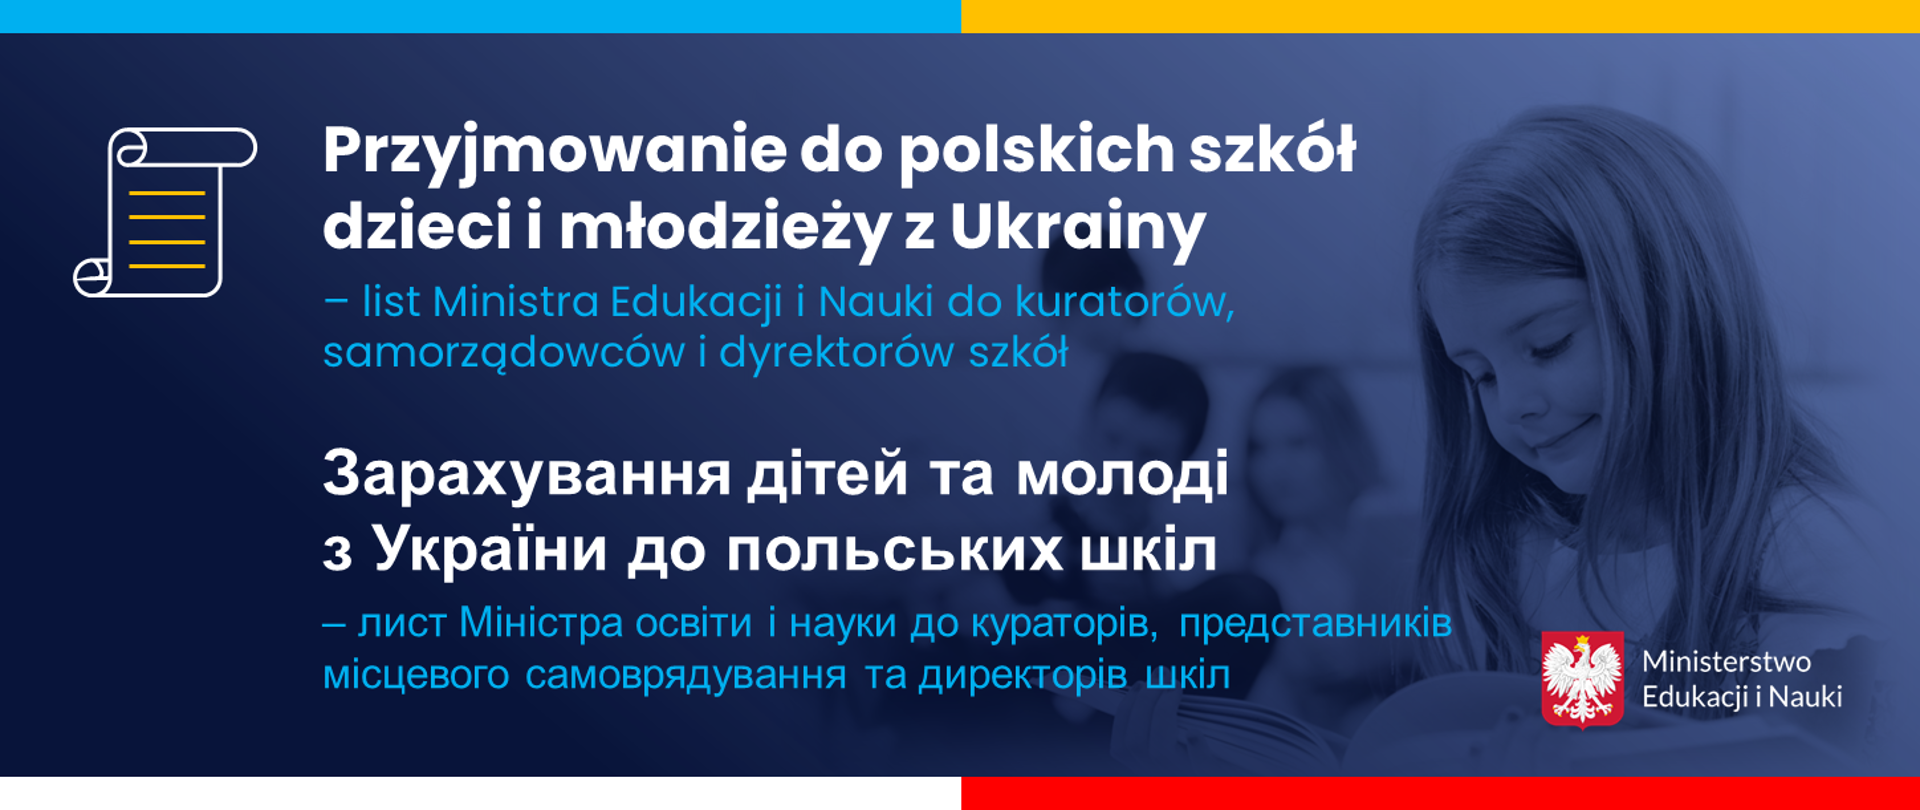 Grafika - na niebieskim tle napis po polsku i ukraińsku Przyjmowanie do polskich szkól dzieci i młodzieży z Ukrainy.